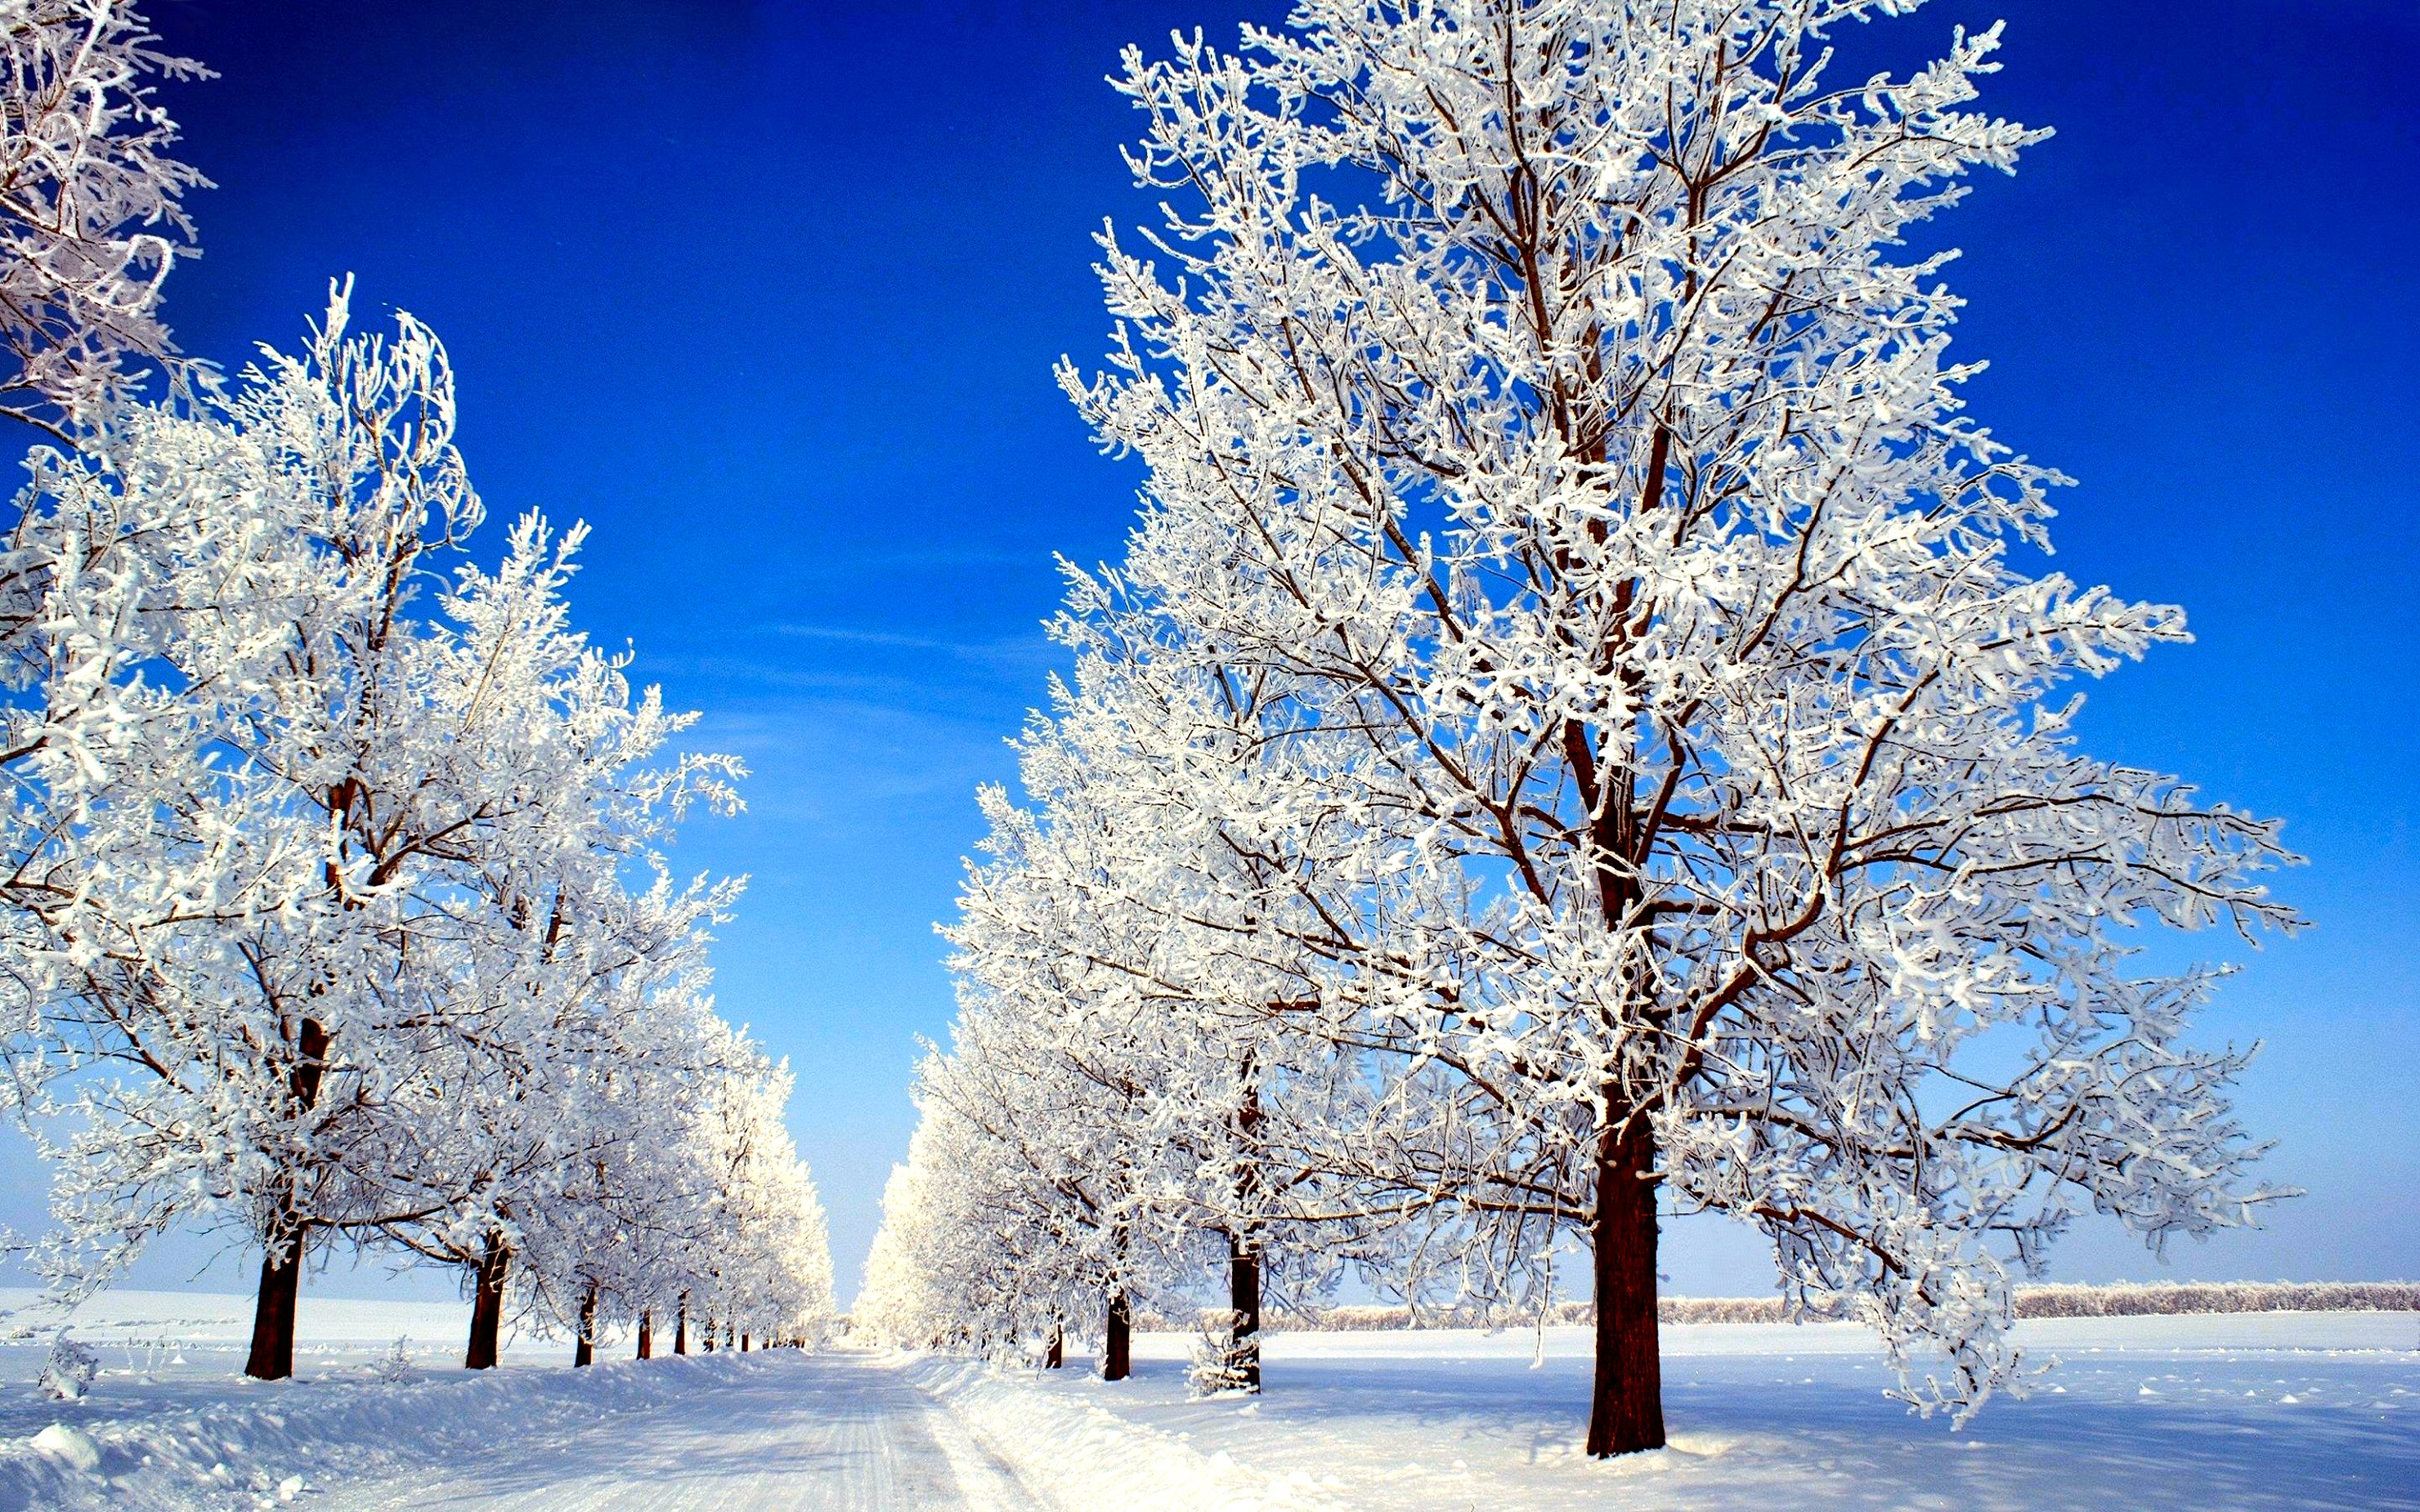 279380 обои 320x480 на телефон бесплатно, скачать картинки снег, зима, деревья, дерево 320x480 на мобильный